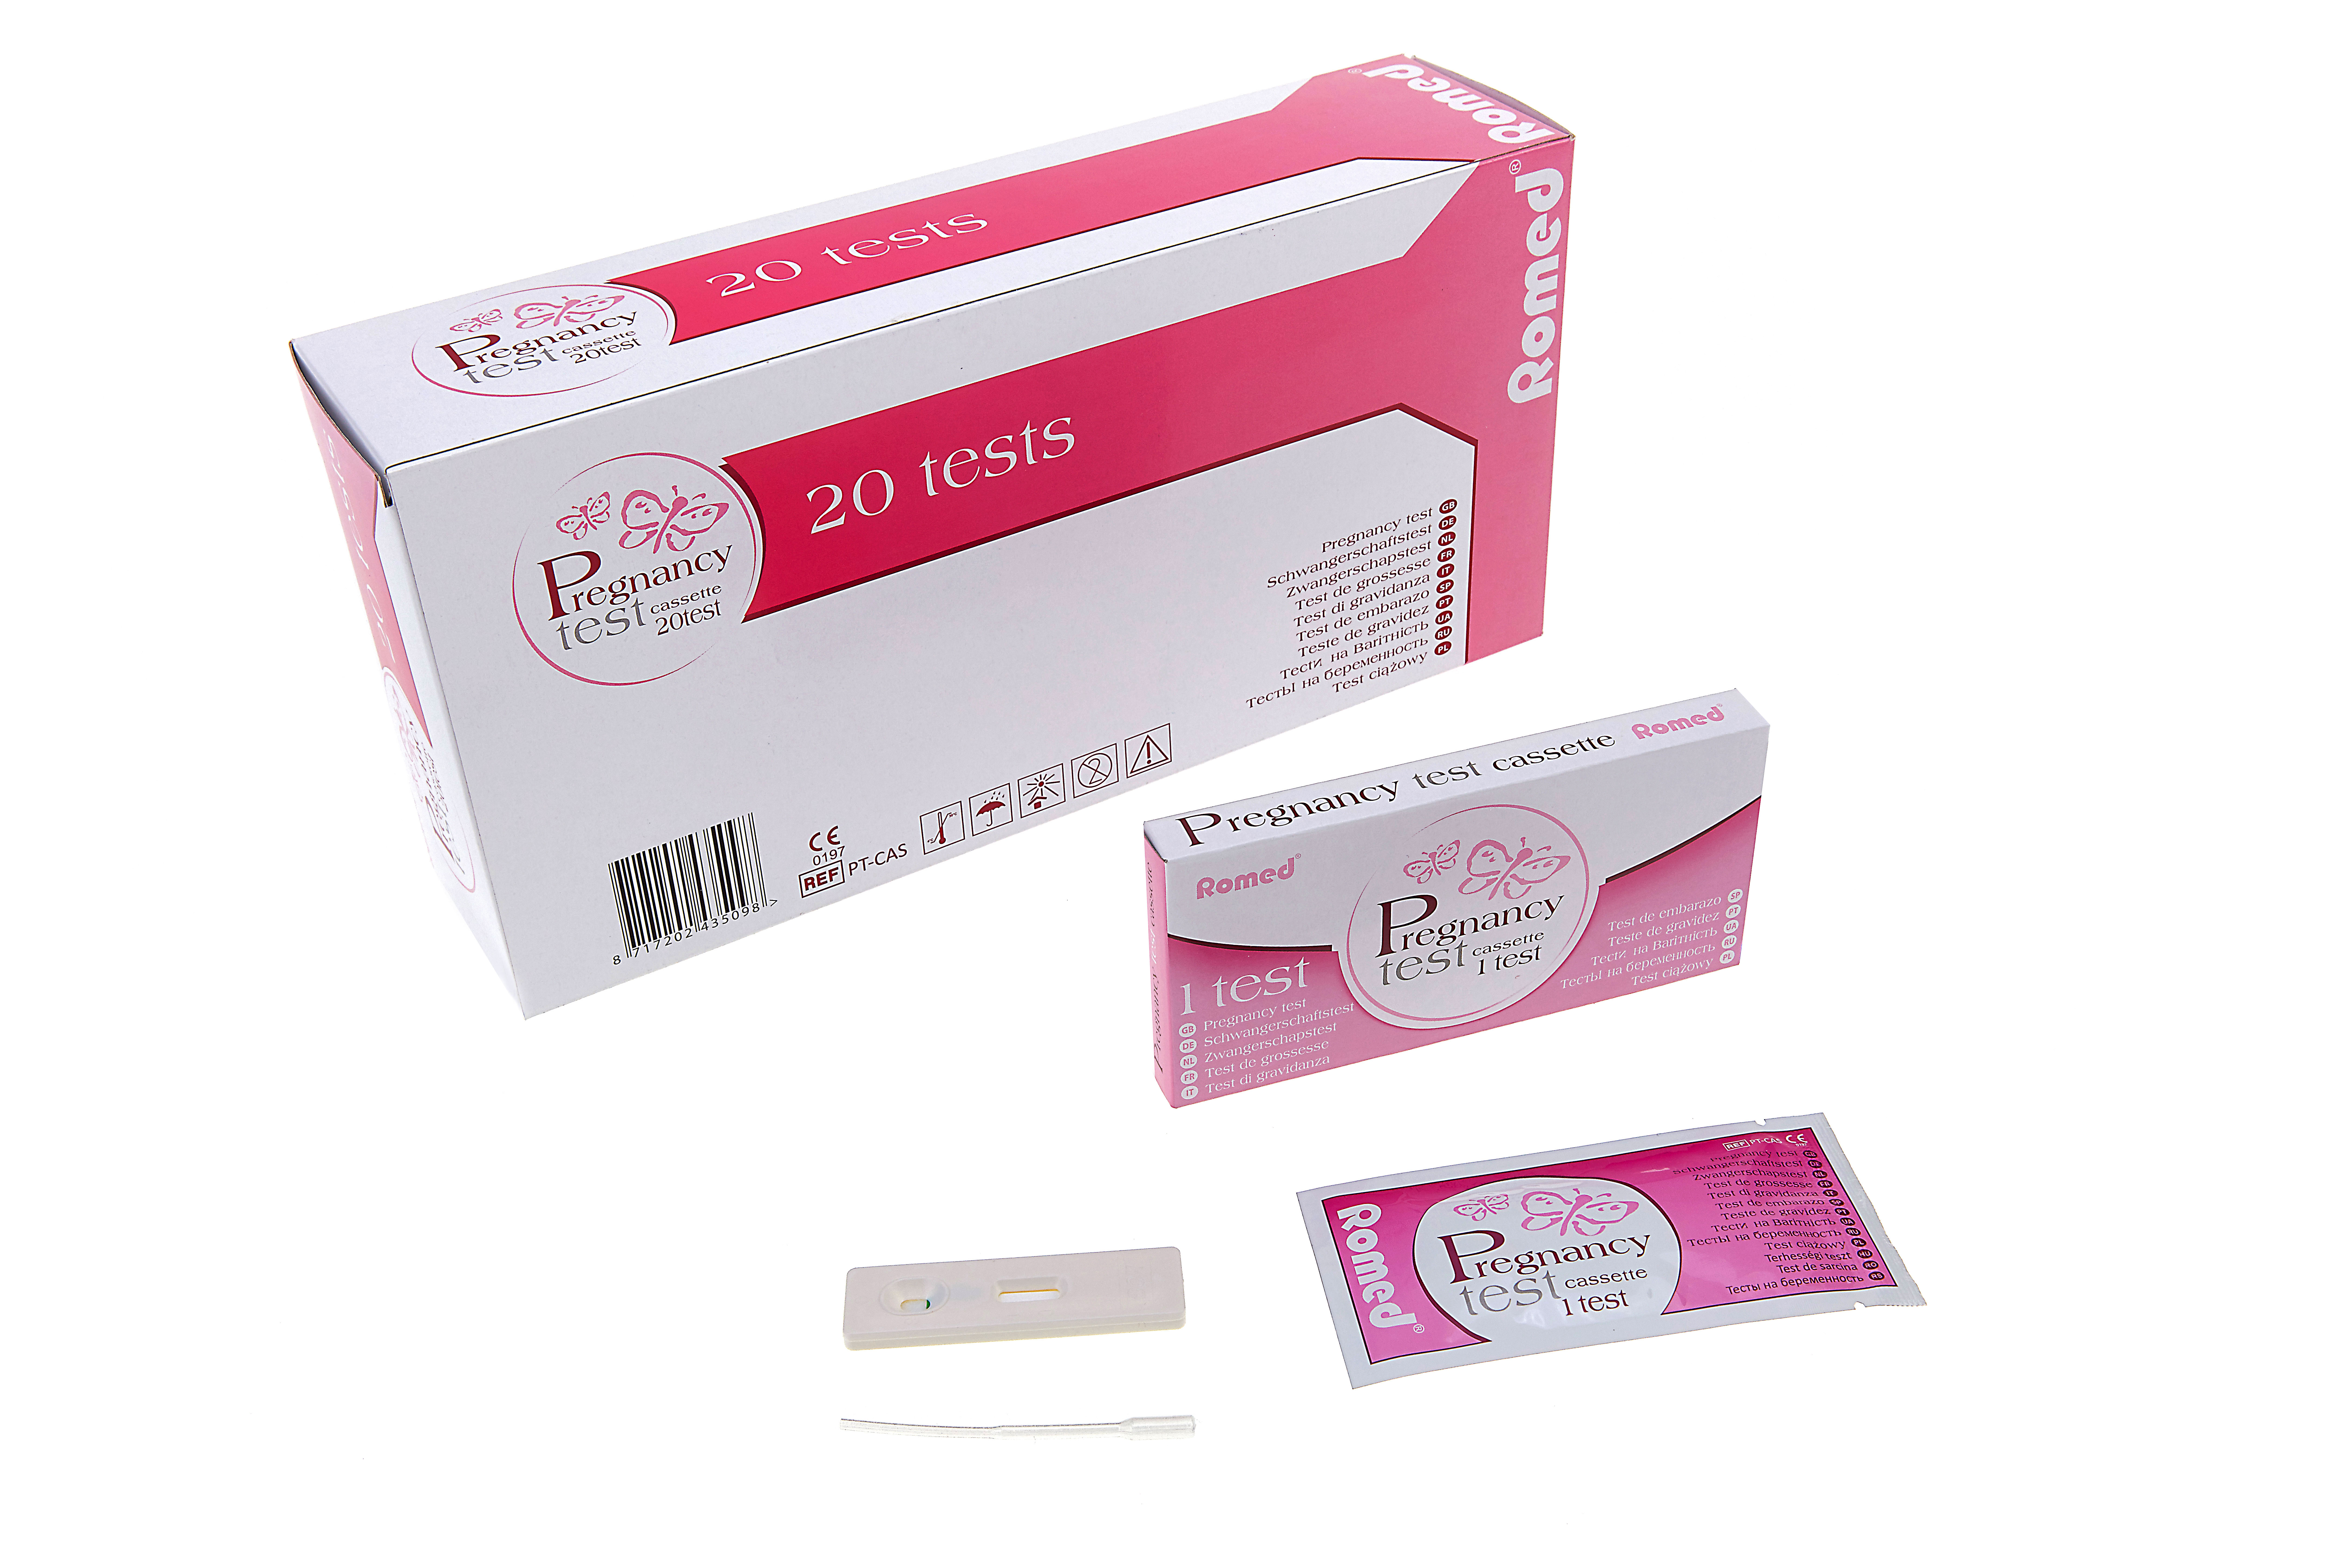 PT-CAS Romed Schwangerschaftsteste, Cassette, verpackt pro Stück, pro 20 Stück in einer Schachtel, 25 x 20 Stück = 500 Stück im Karton.